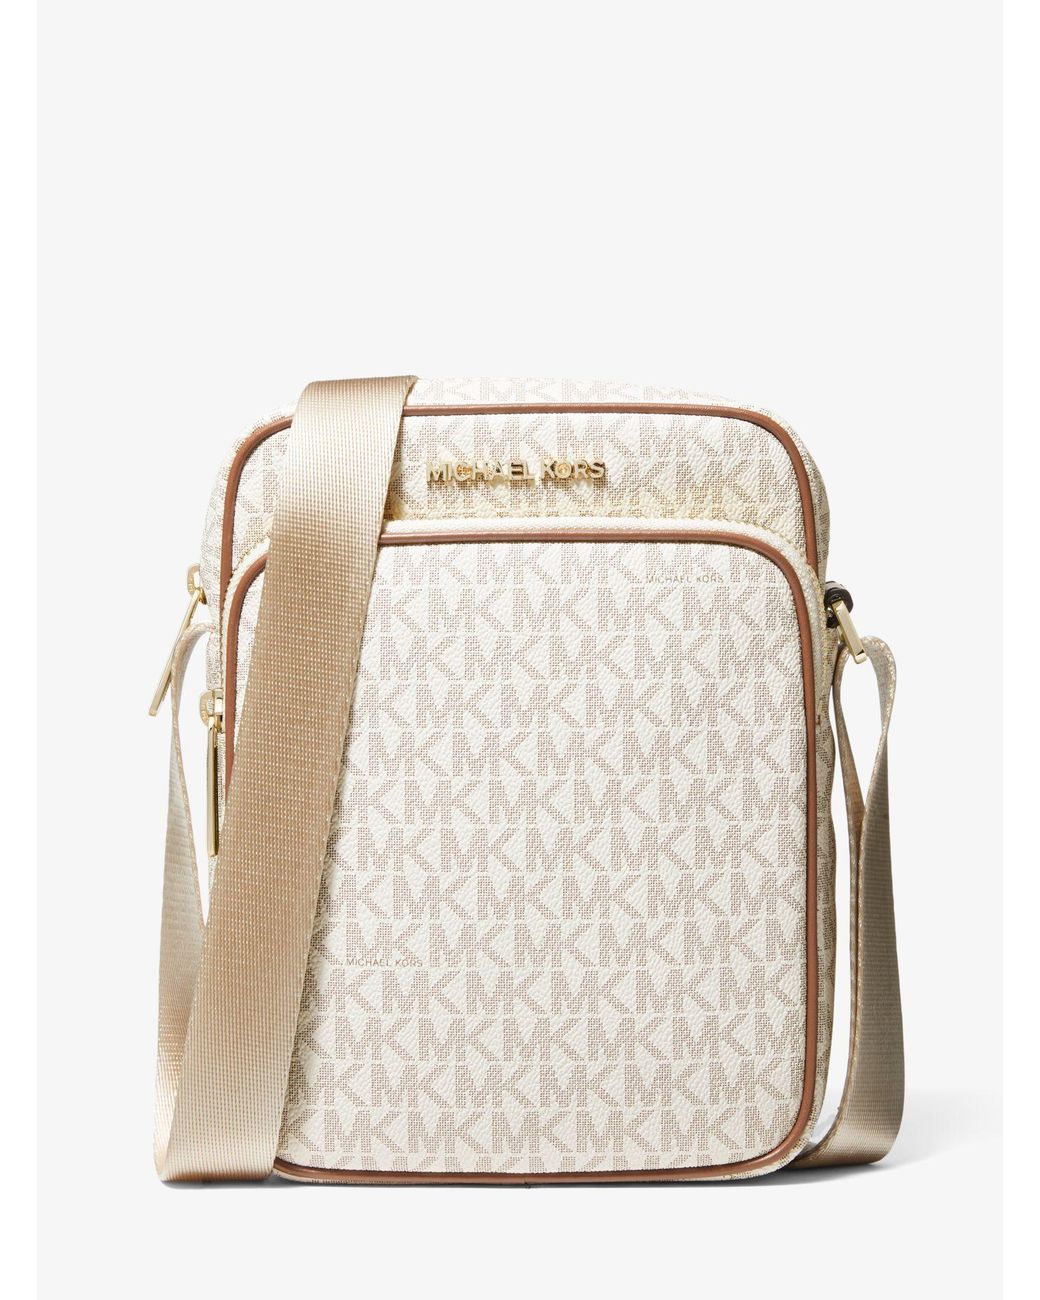 Michael Kors Flight Bag Crossbody Bag Handbag Messenger Purse Shoulder  Vanilla 194900655788  eBay